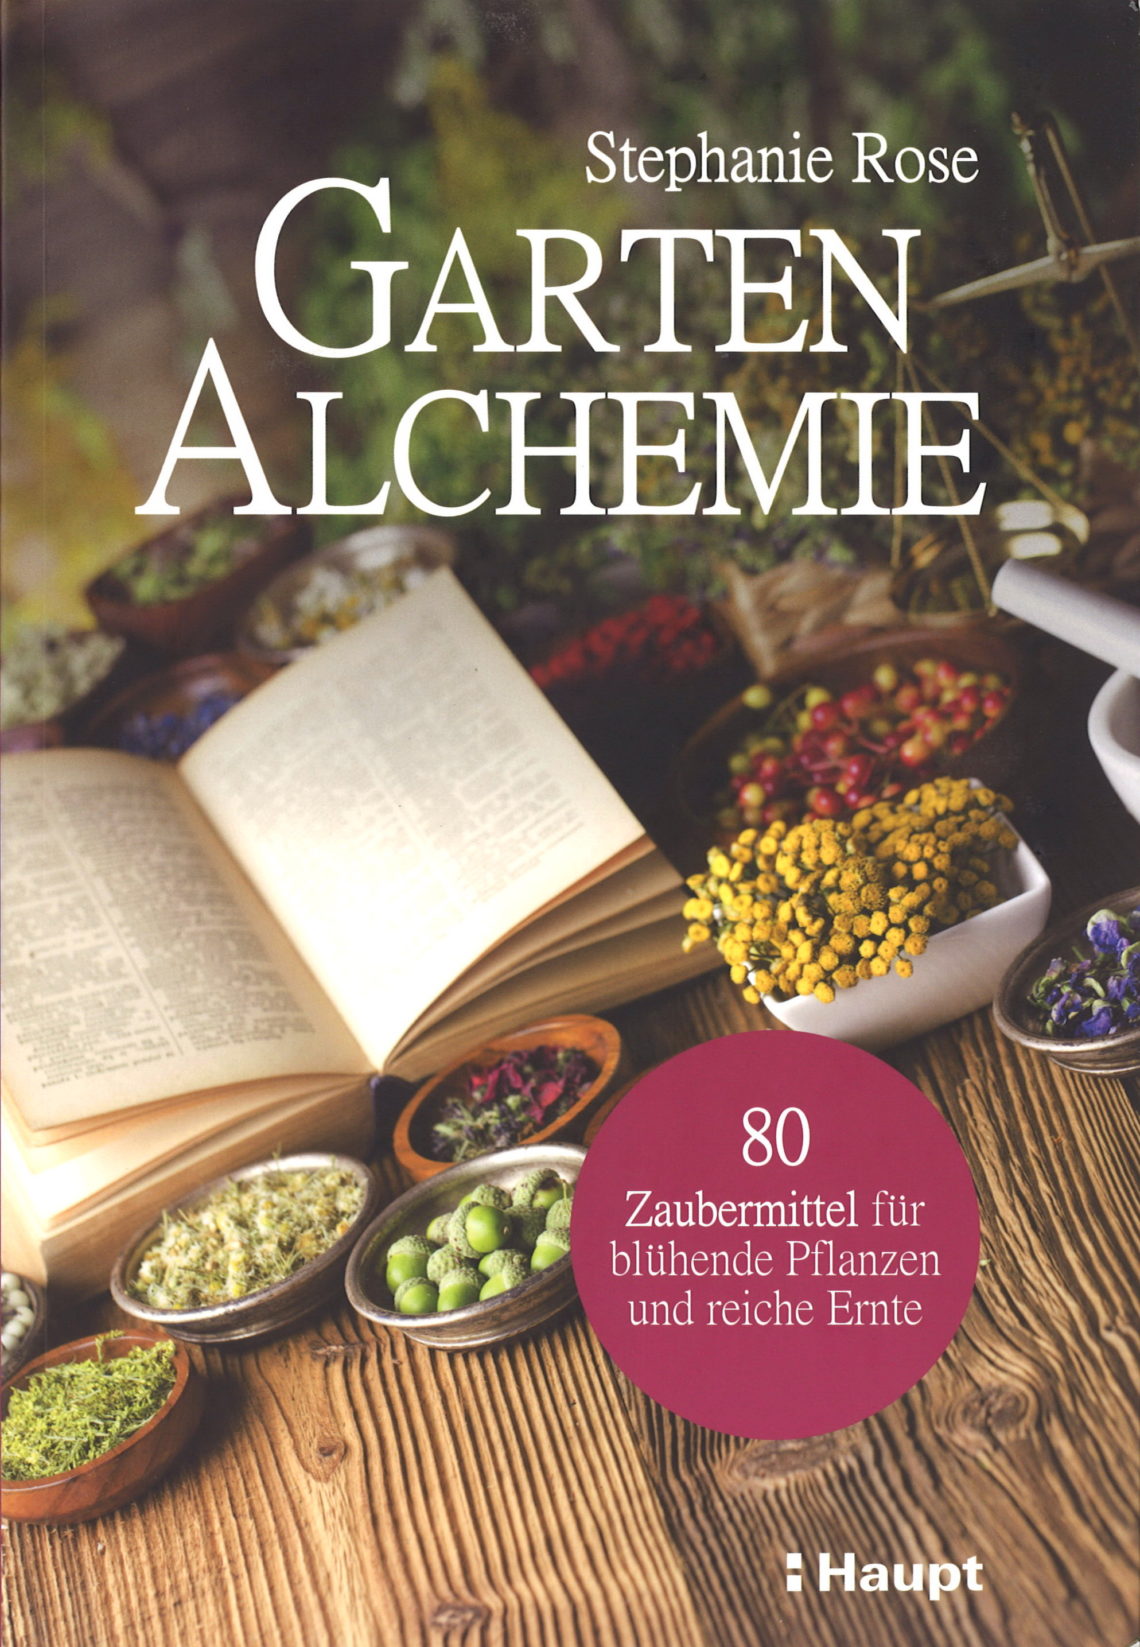 Buchvorstellung Garten Alchemie